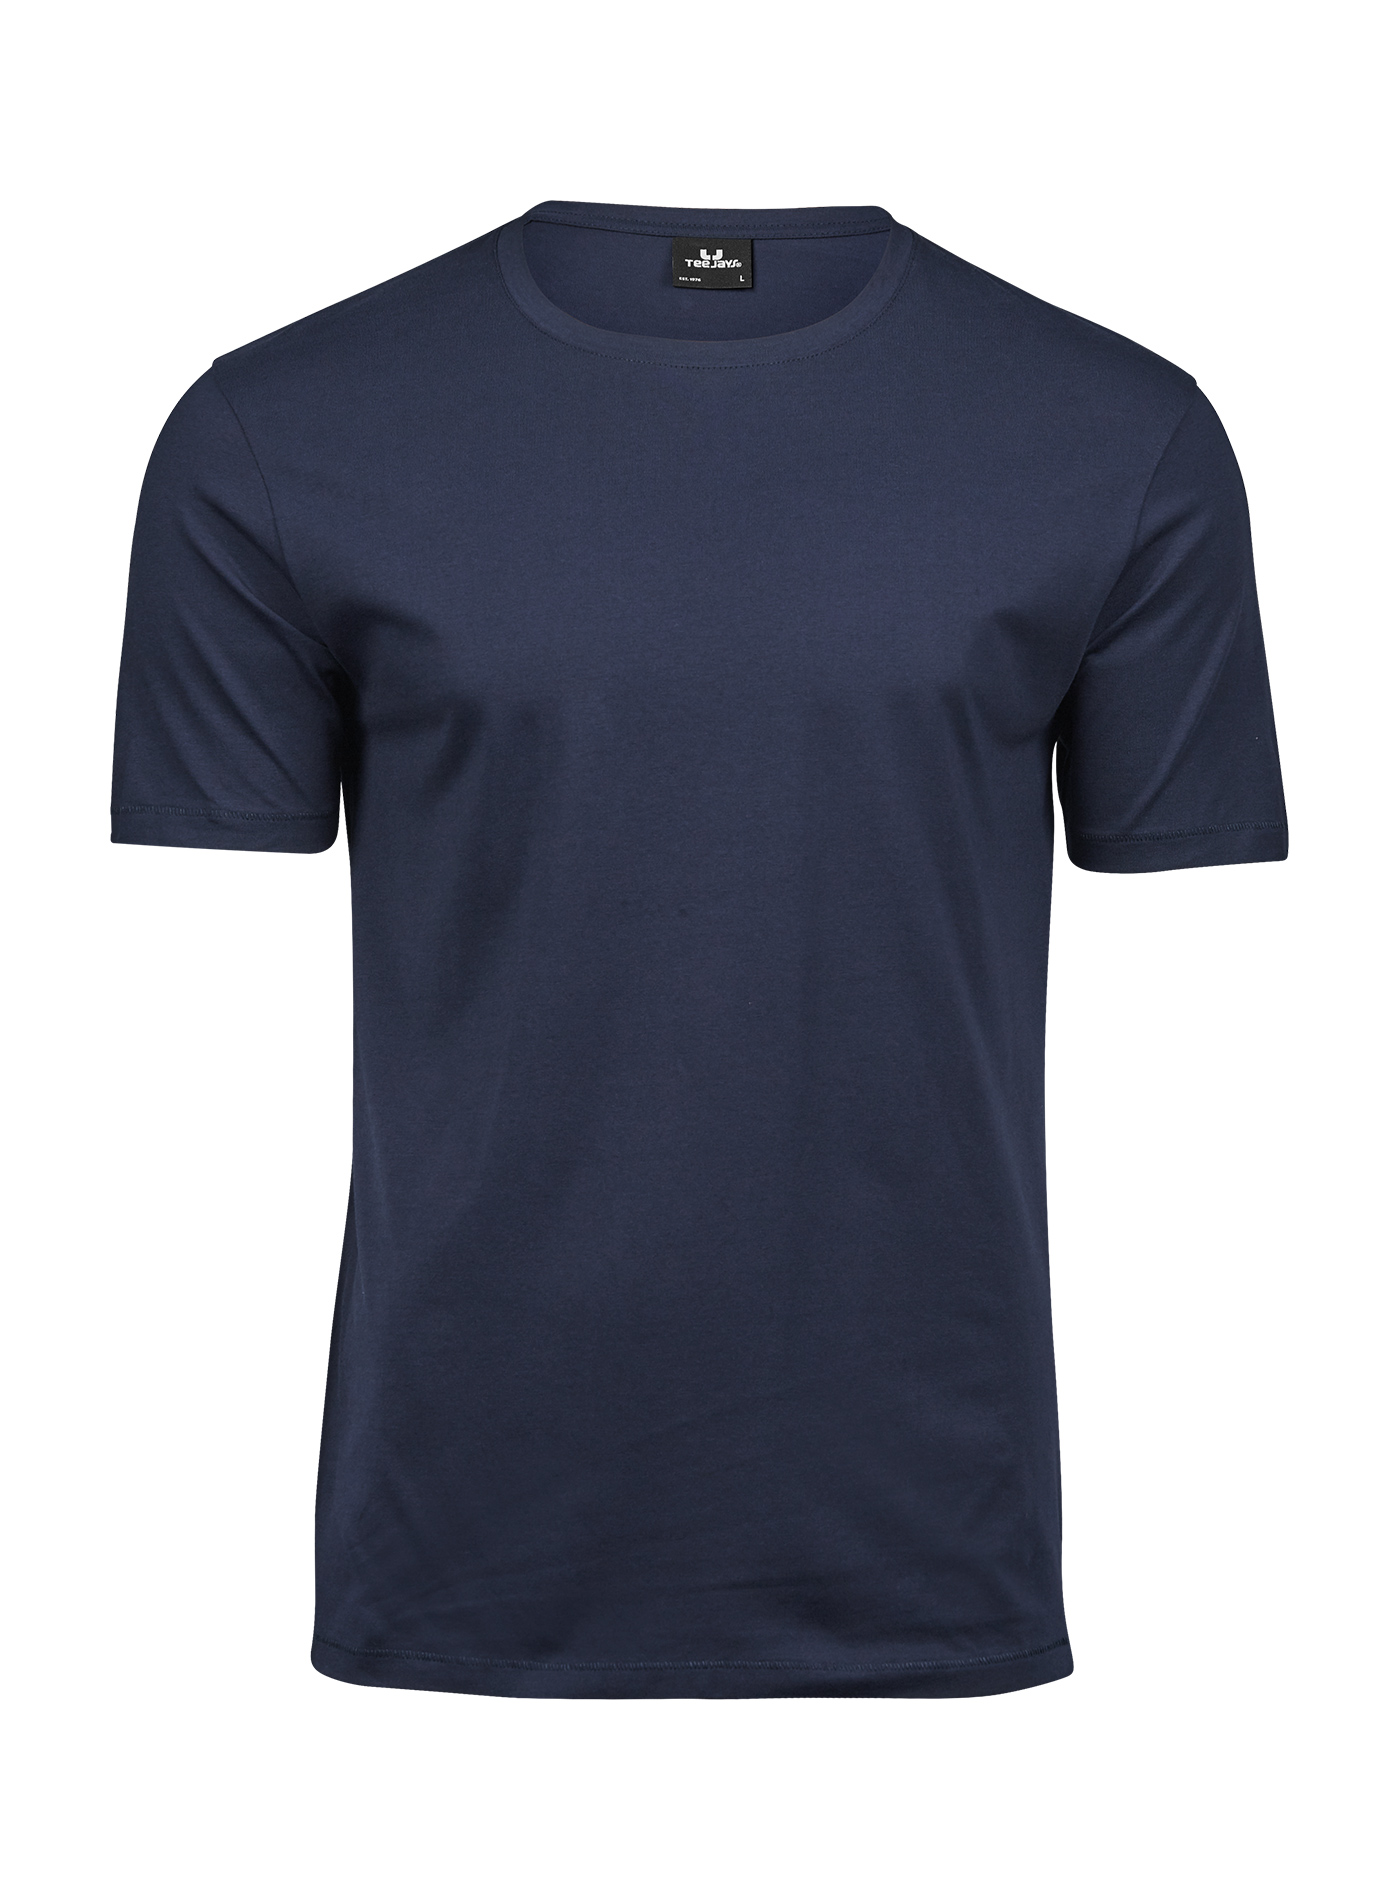 Pánské tričko Luxury Tee Jays - Cobalt blue/Navy XXL